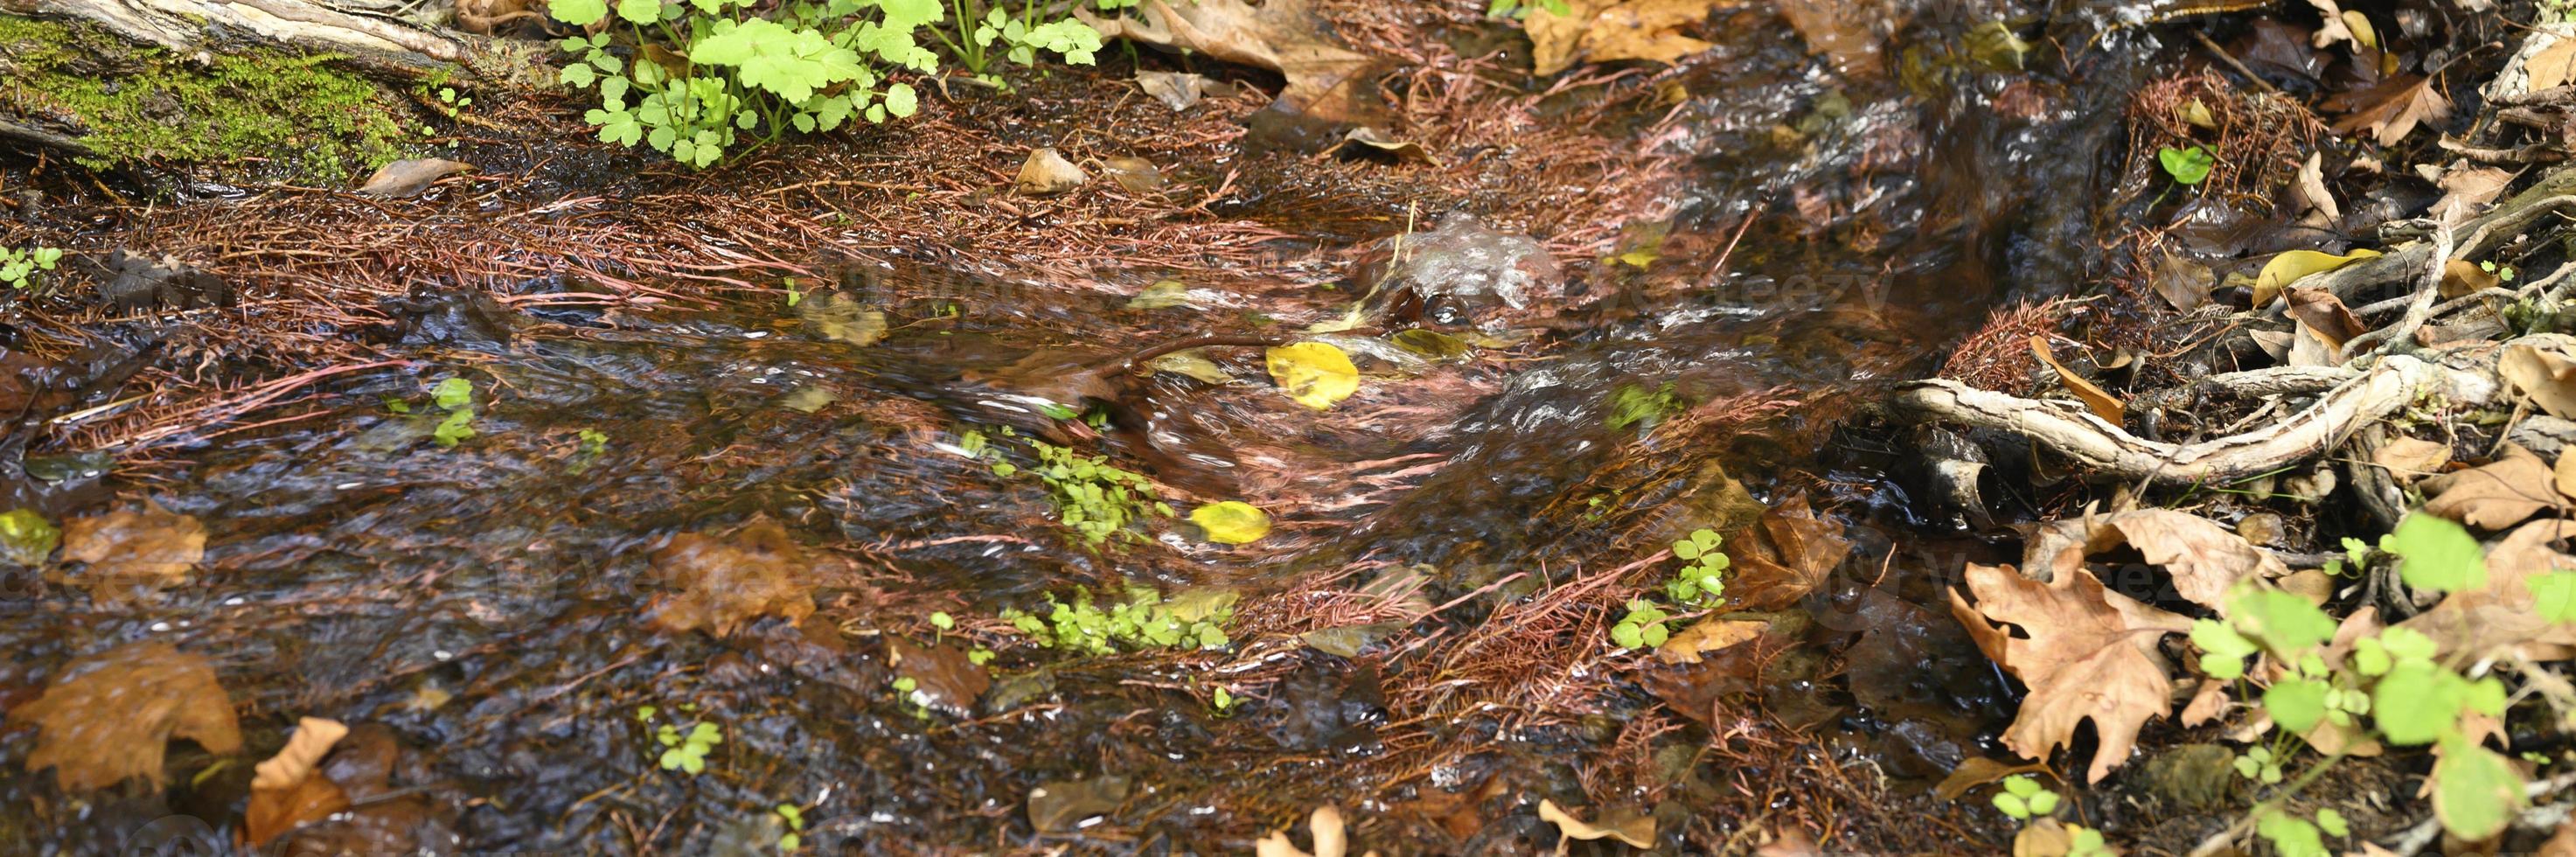 um riacho correndo entre as raízes nuas das árvores em um penhasco rochoso e folhas caídas de outono foto